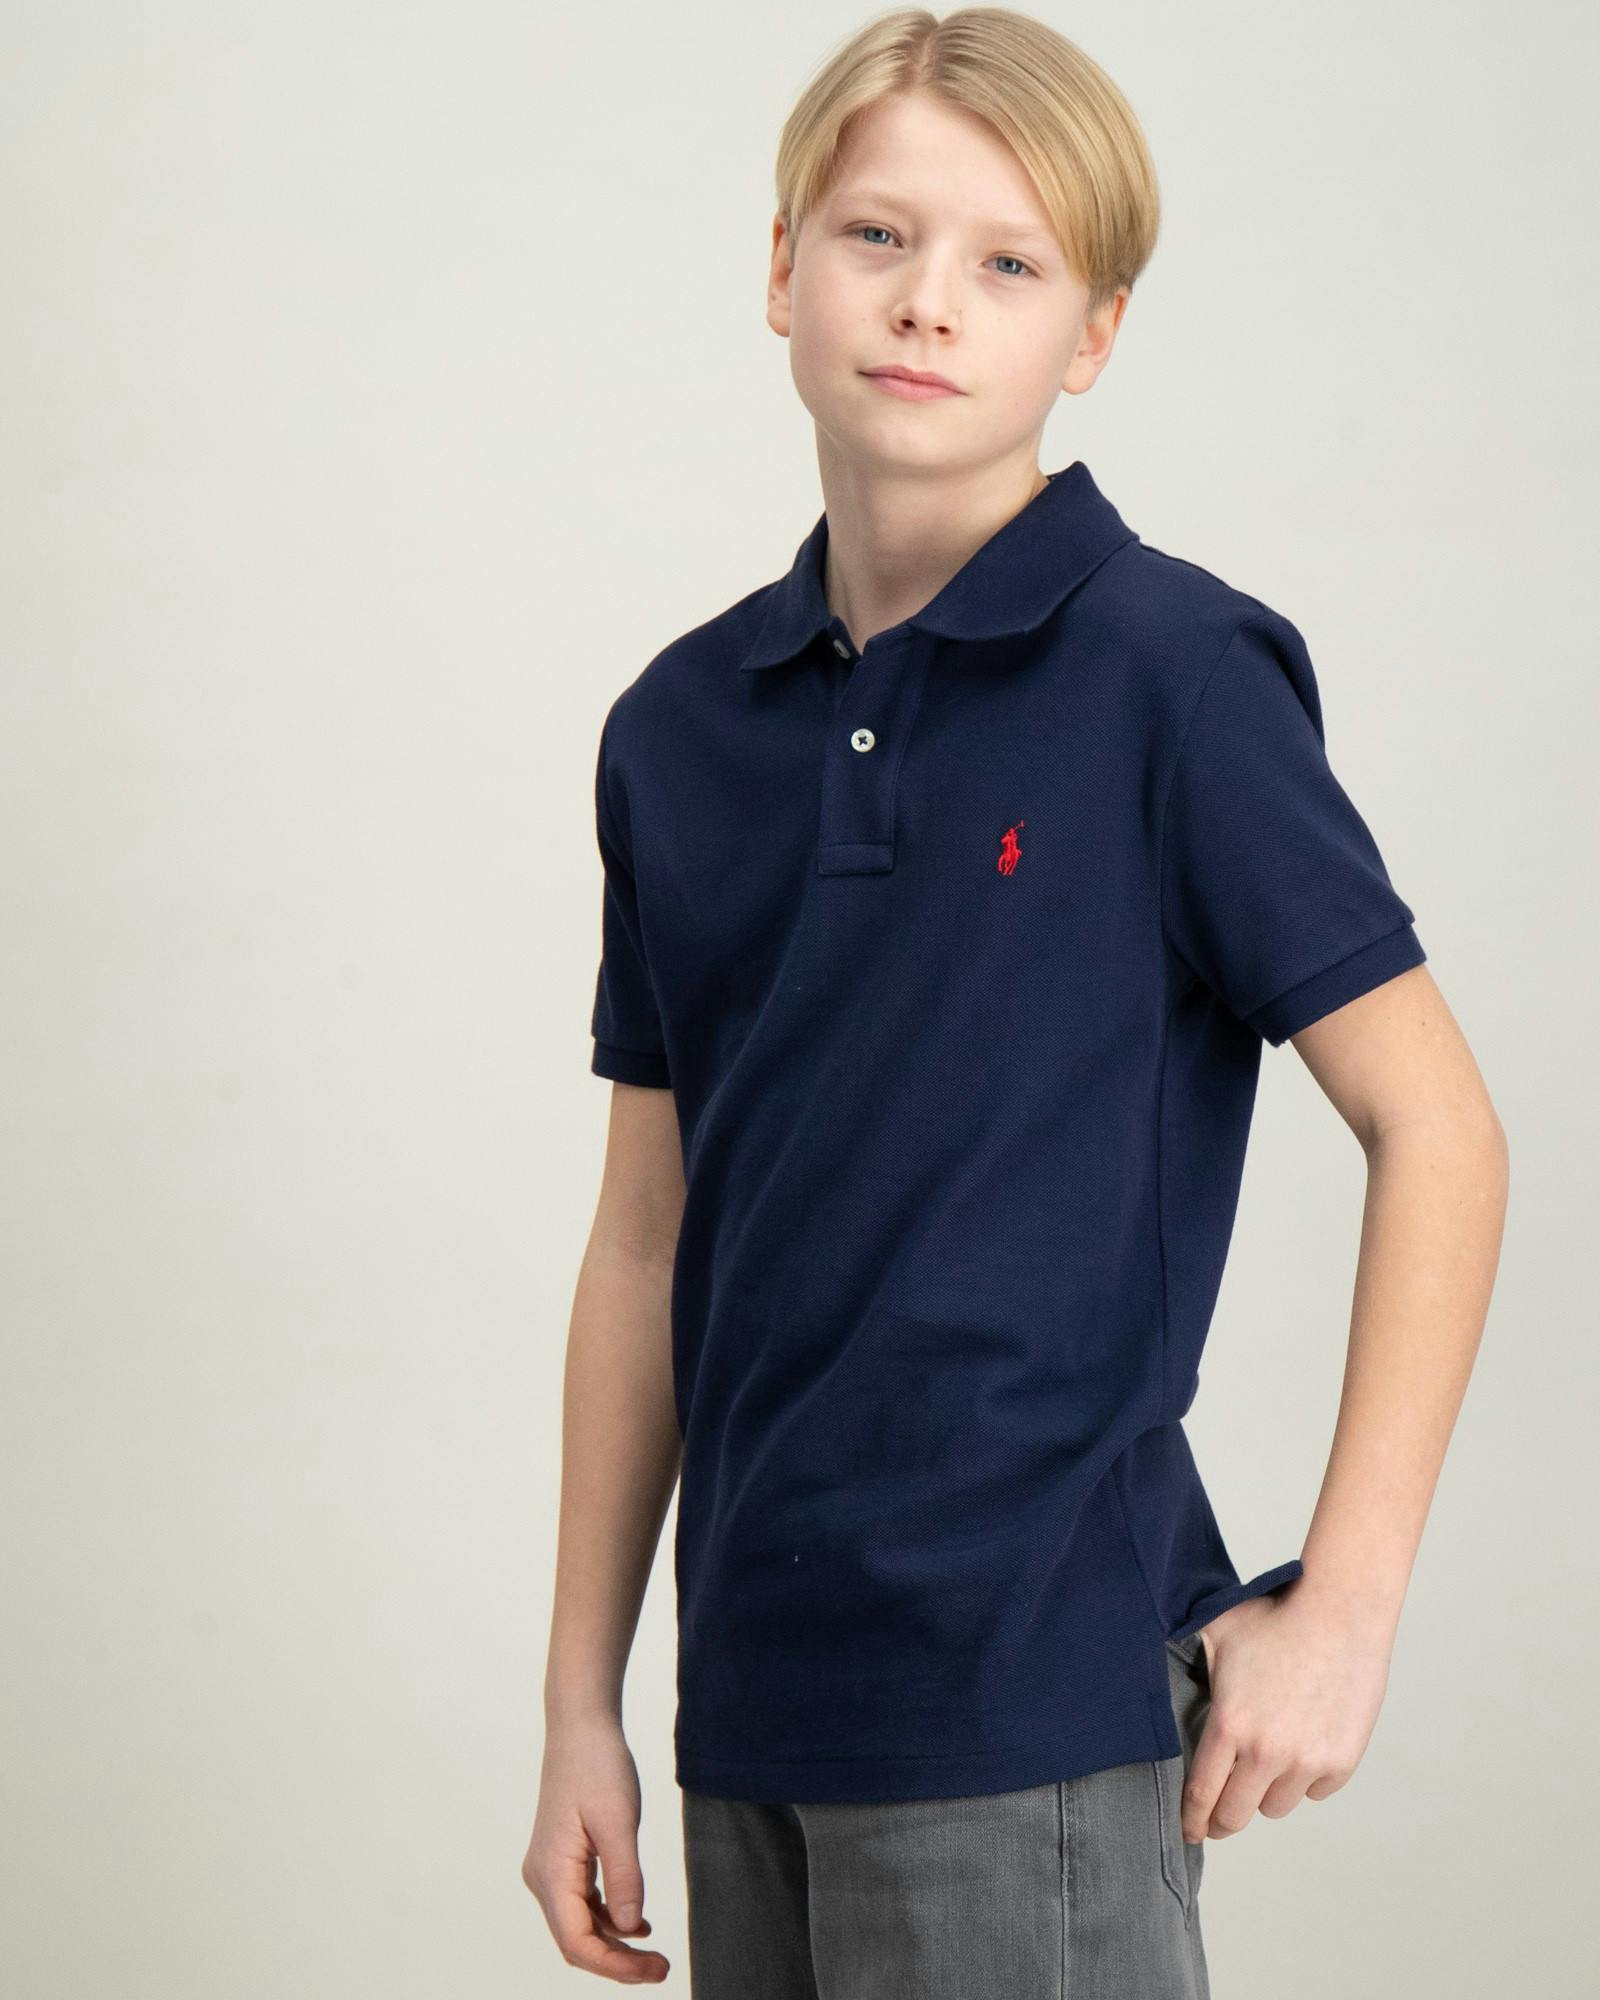 Kinder Jugendliche Pique T-Shirt und & Polo Hemden | für Brand Kids Store